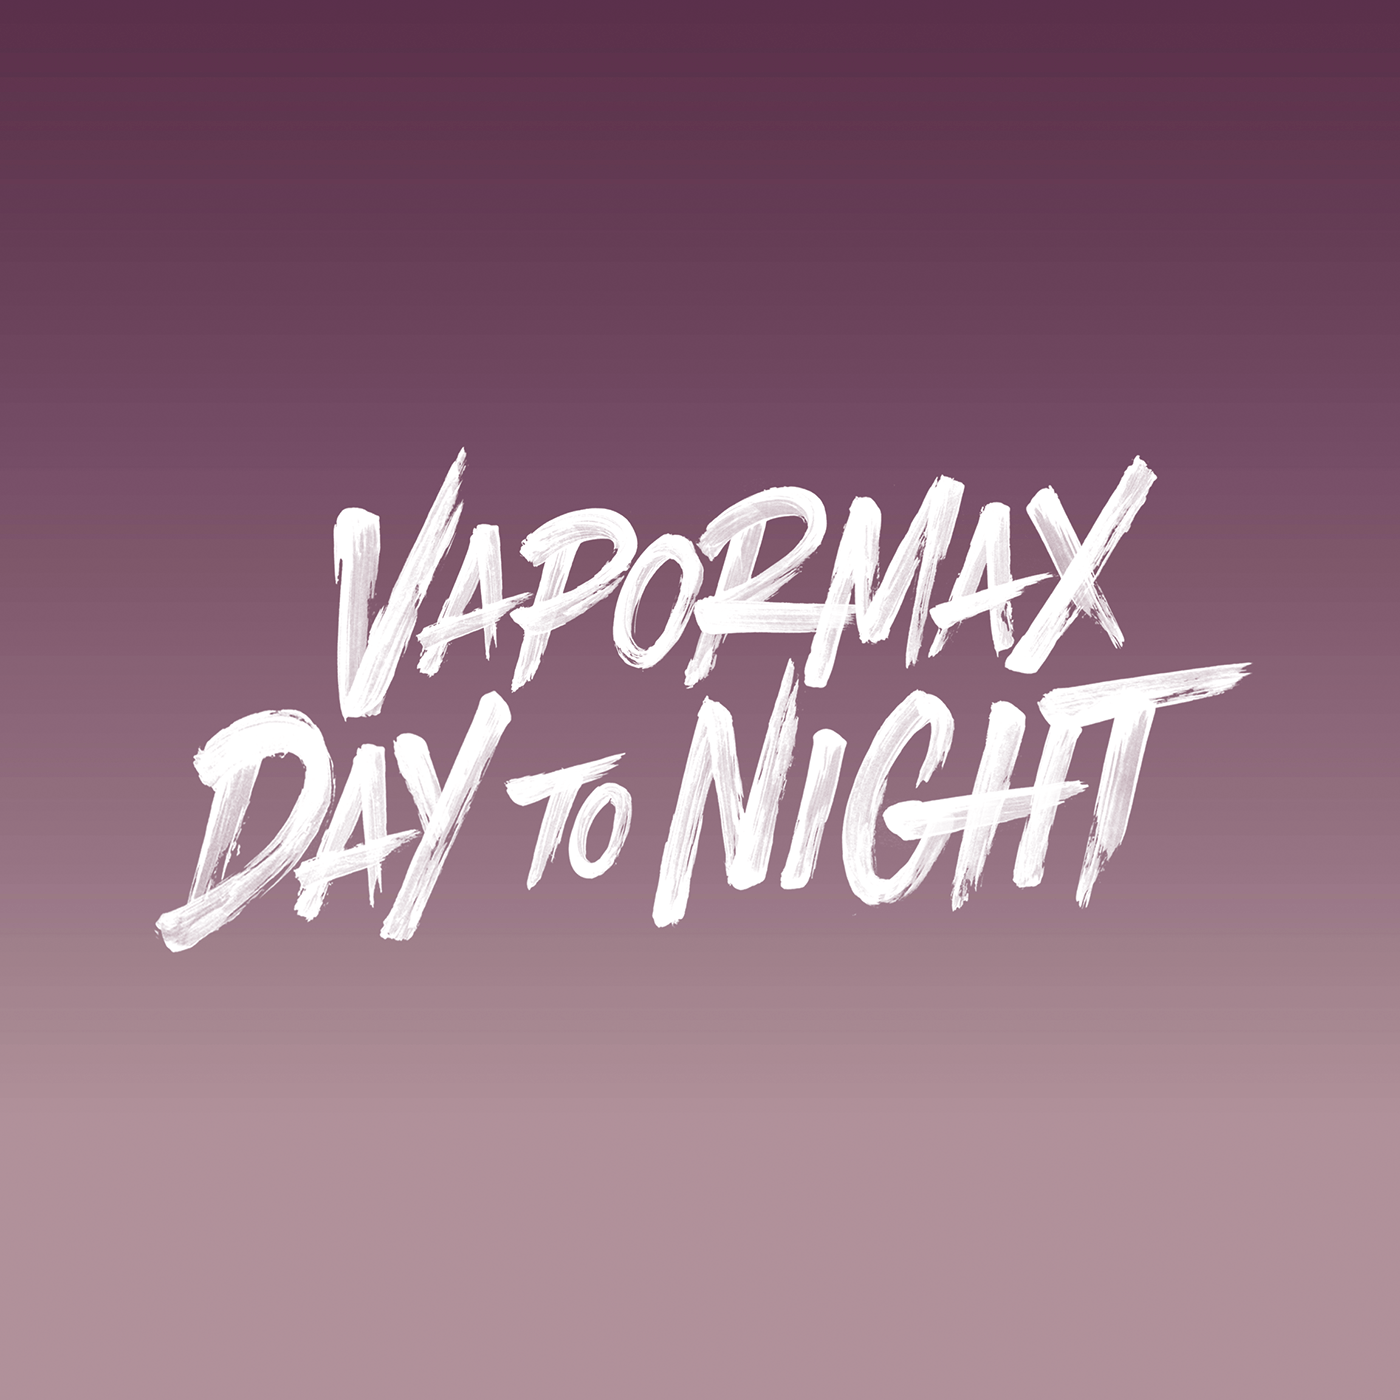 Niike Vapor Max Logo - Nike VaporMax Day To Night on Behance